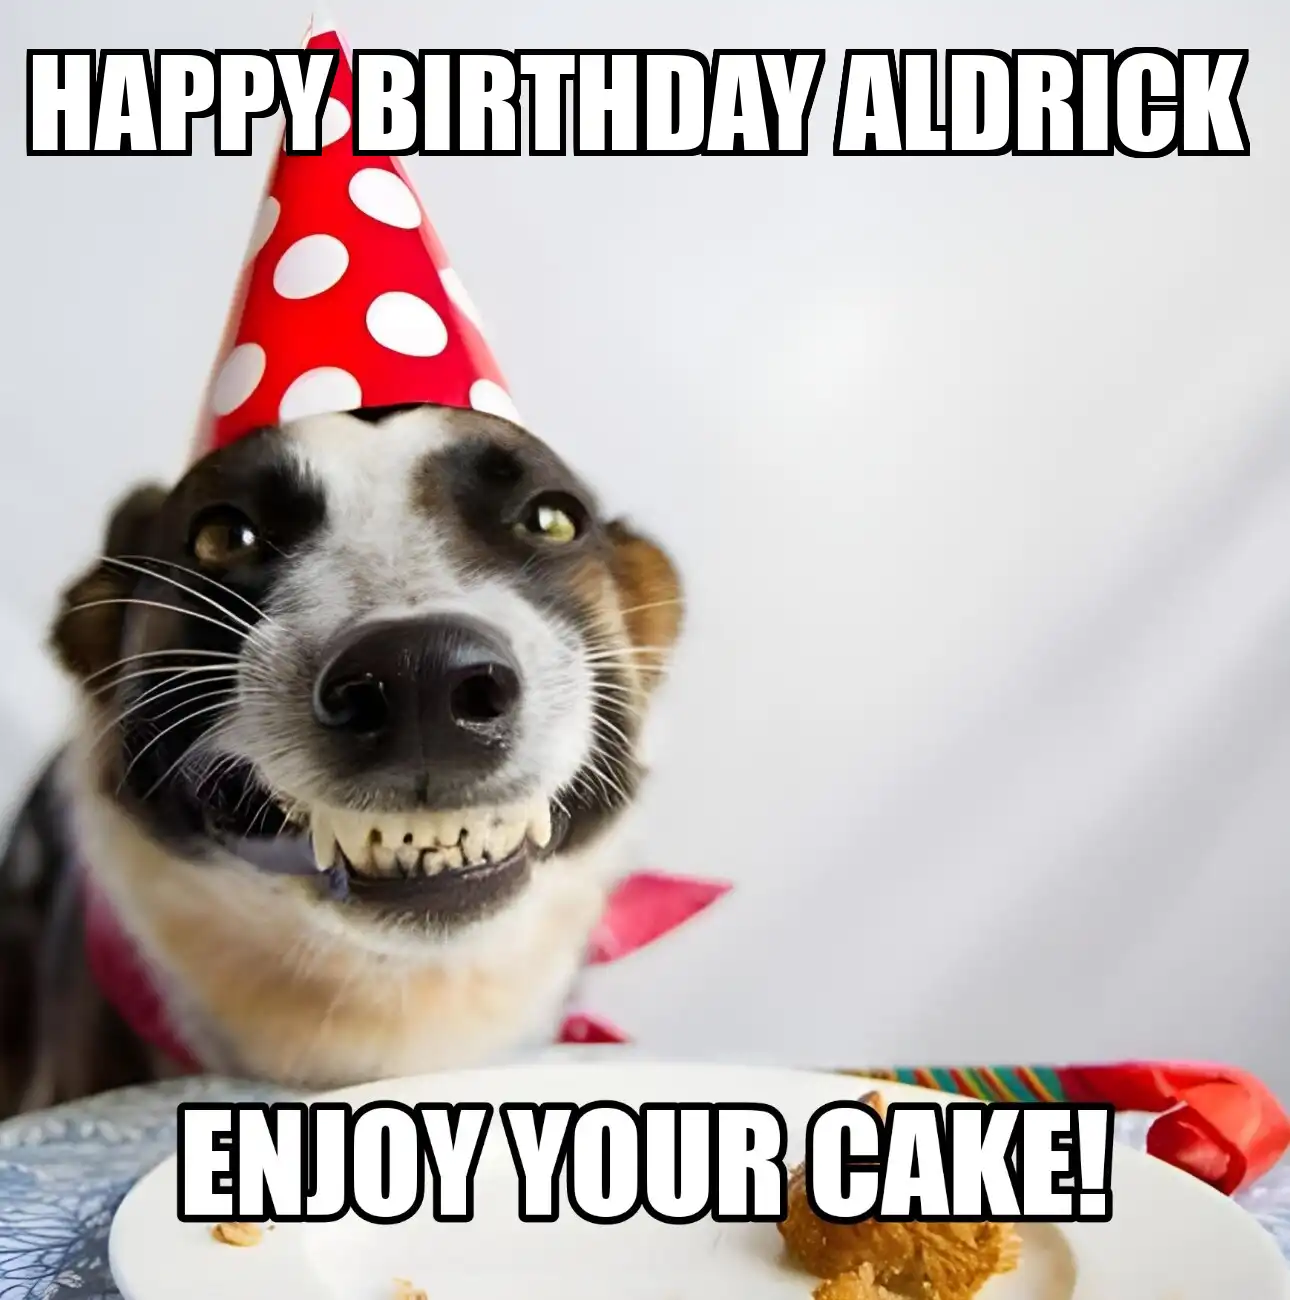 Happy Birthday Aldrick Enjoy Your Cake Dog Meme